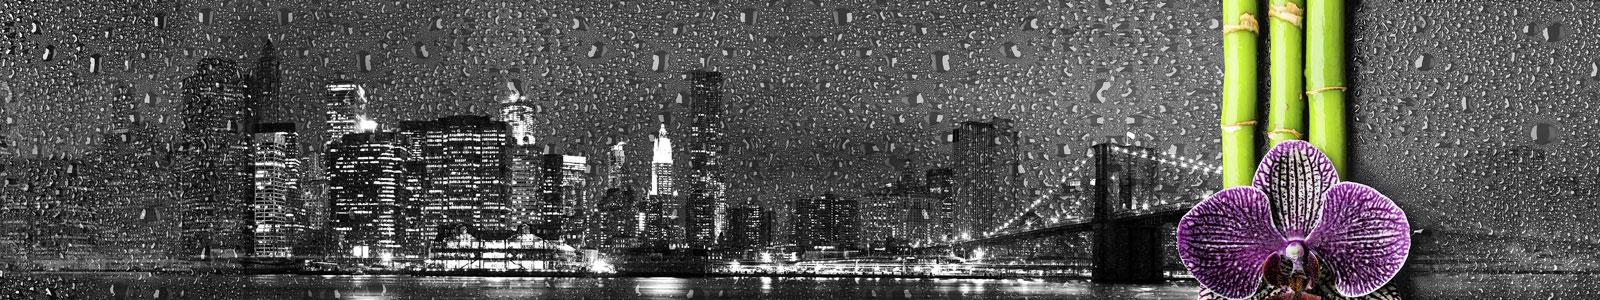 №5499 - Капли на стекле с изображением ночного Нью-Йорка с орхидеей